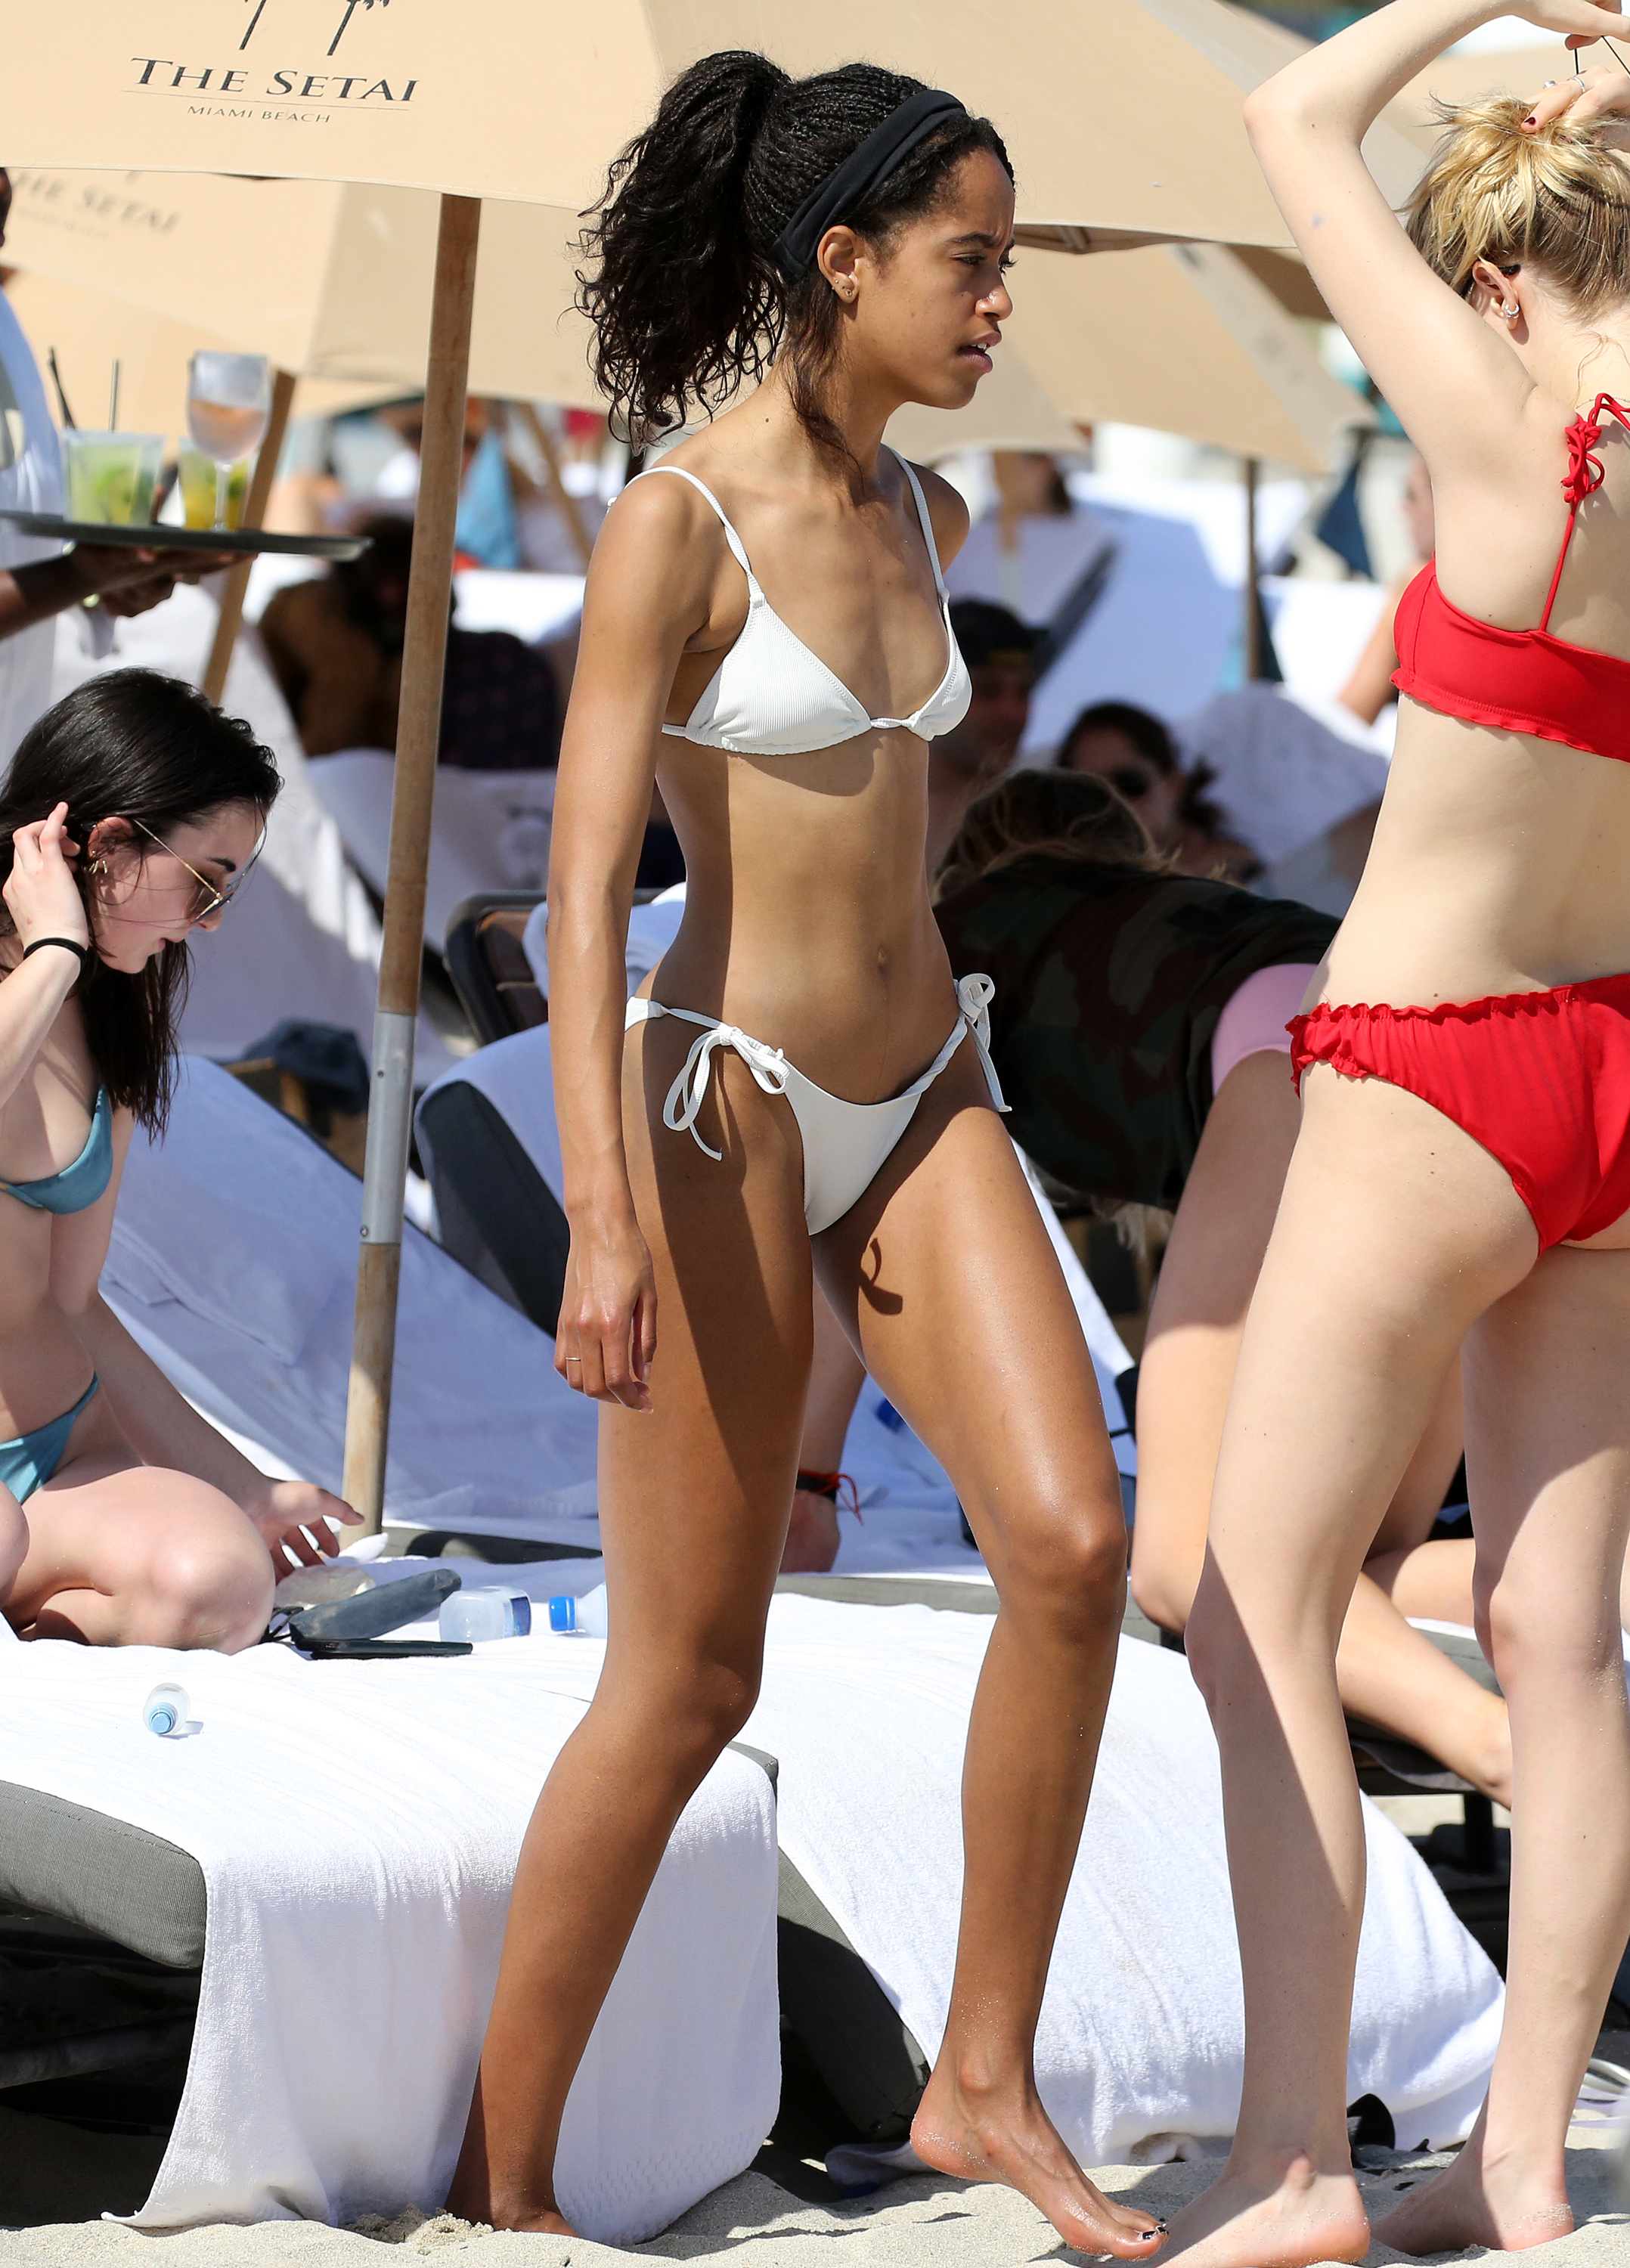 800px x 1113px - Malia Obama Bikini Pictures: Best Swimsuit Photos